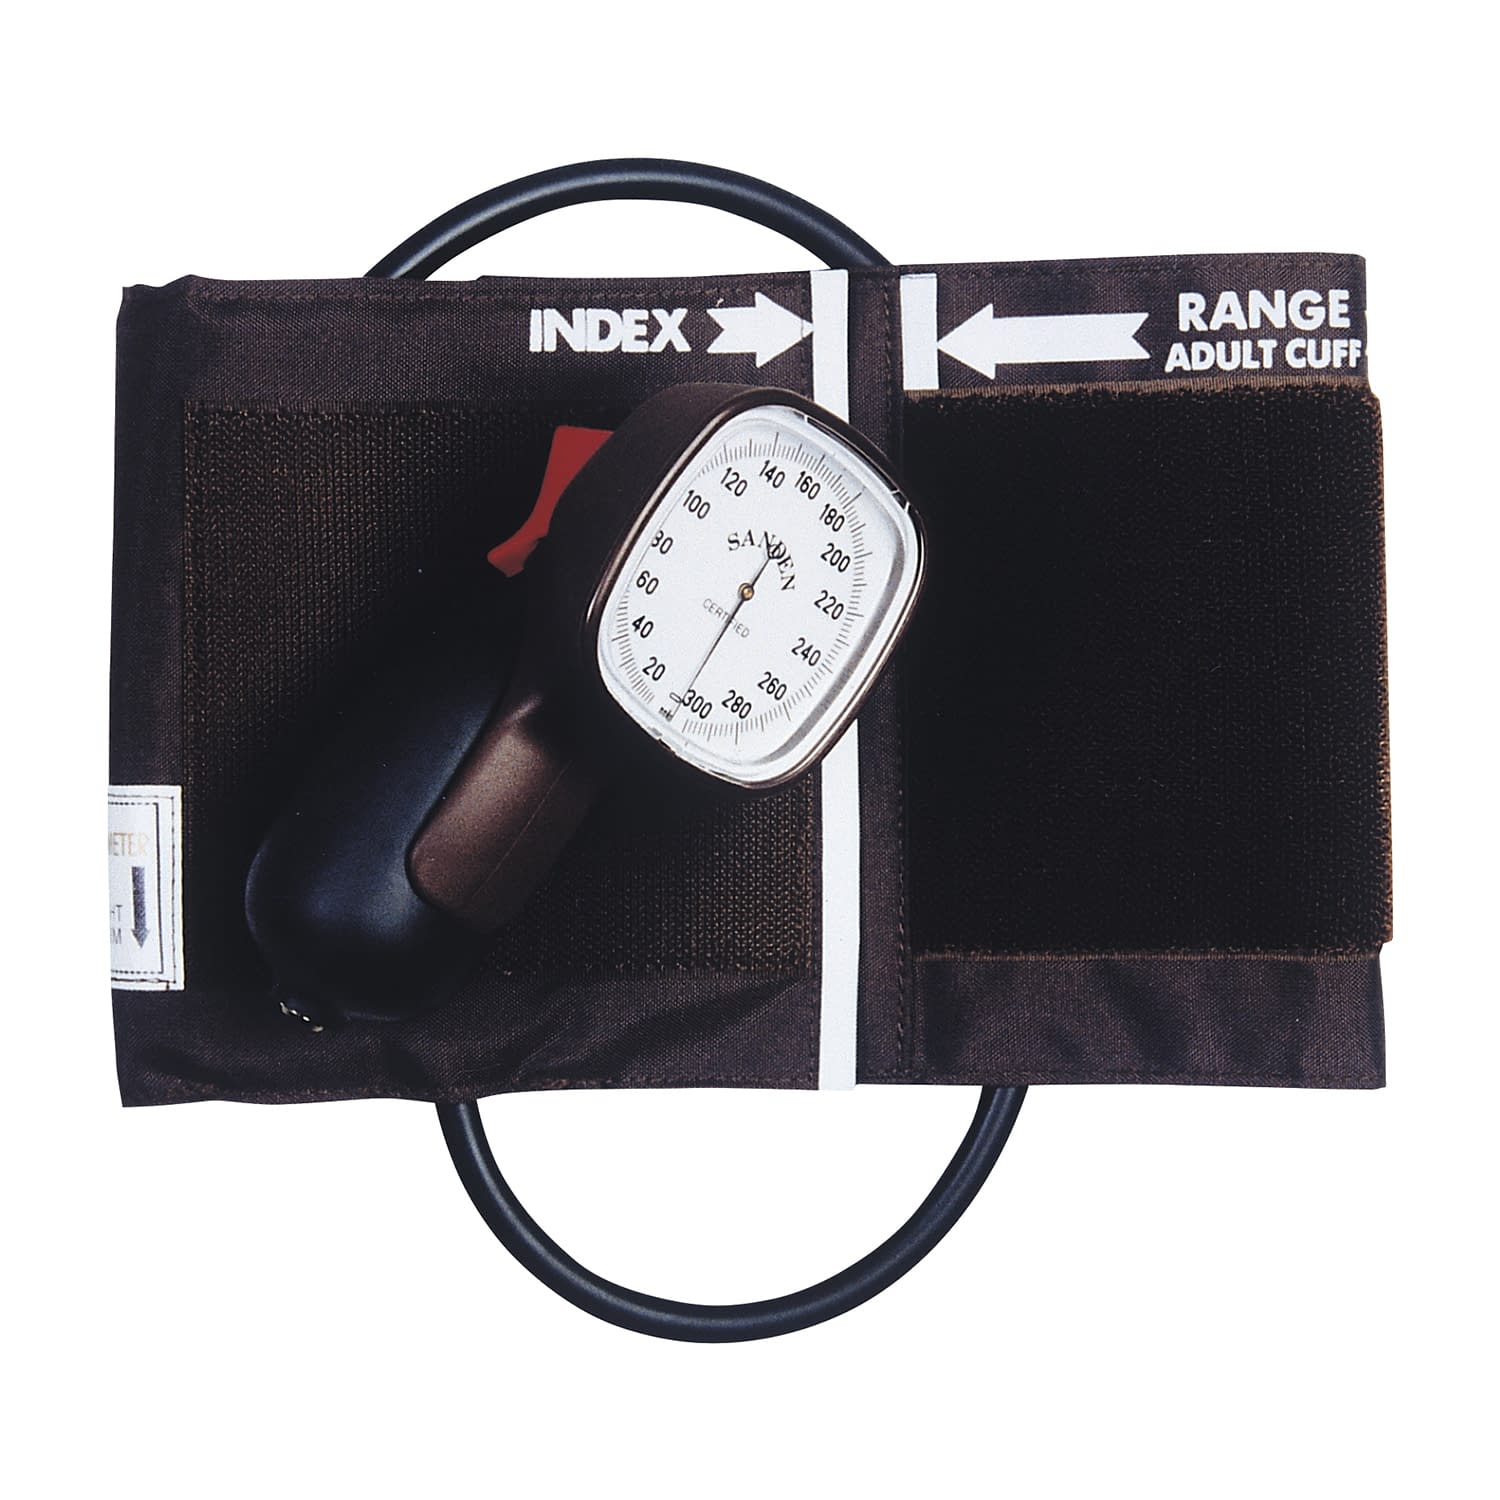 (02-3086-00)アネロイド血圧計（ワンハンド型） SM-210 ｱﾈﾛｲﾄﾞｹﾂｱﾂｹｲ(ﾜﾝﾊﾝﾄﾞ)【1組単位】【2019年カタログ商品】